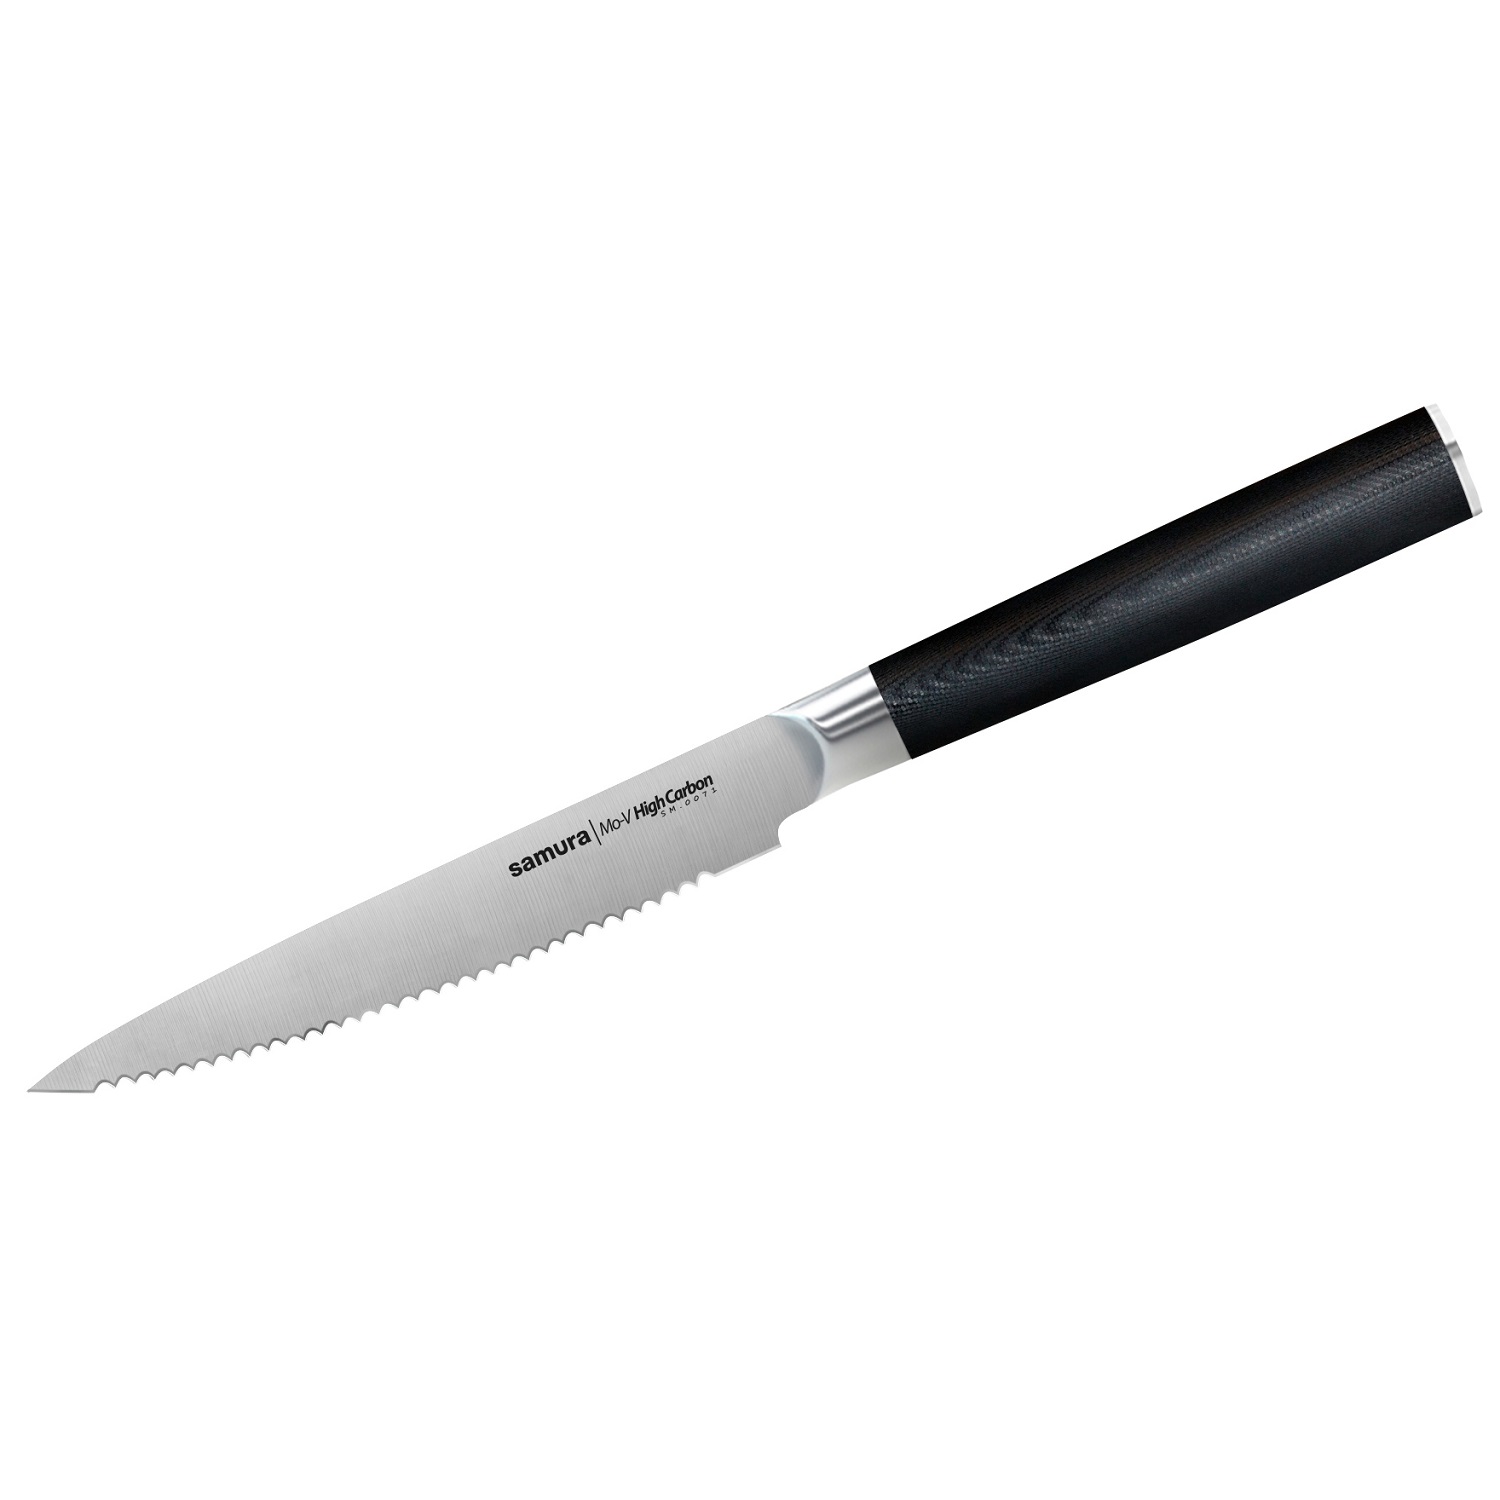 Нож Samura для томатов Mo-V, 12 см, G-10 нож универсальный mo v 12 5 см sm 0021 k samura